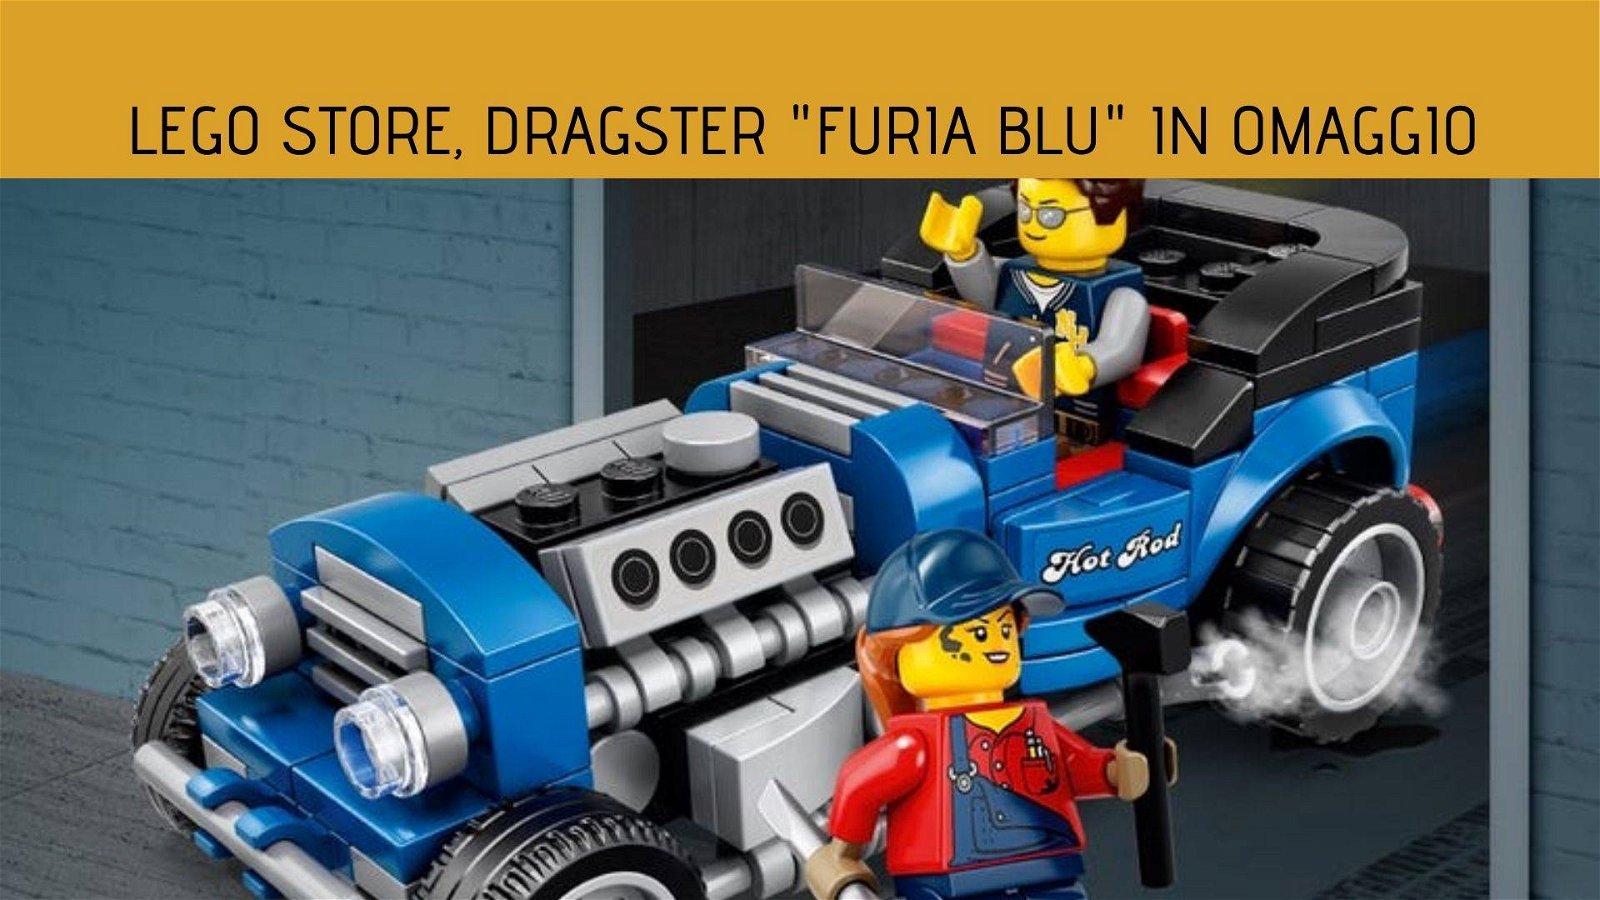 Immagine di LEGO store, Dragster "Furia blu" in omaggio spendendo almeno 85€